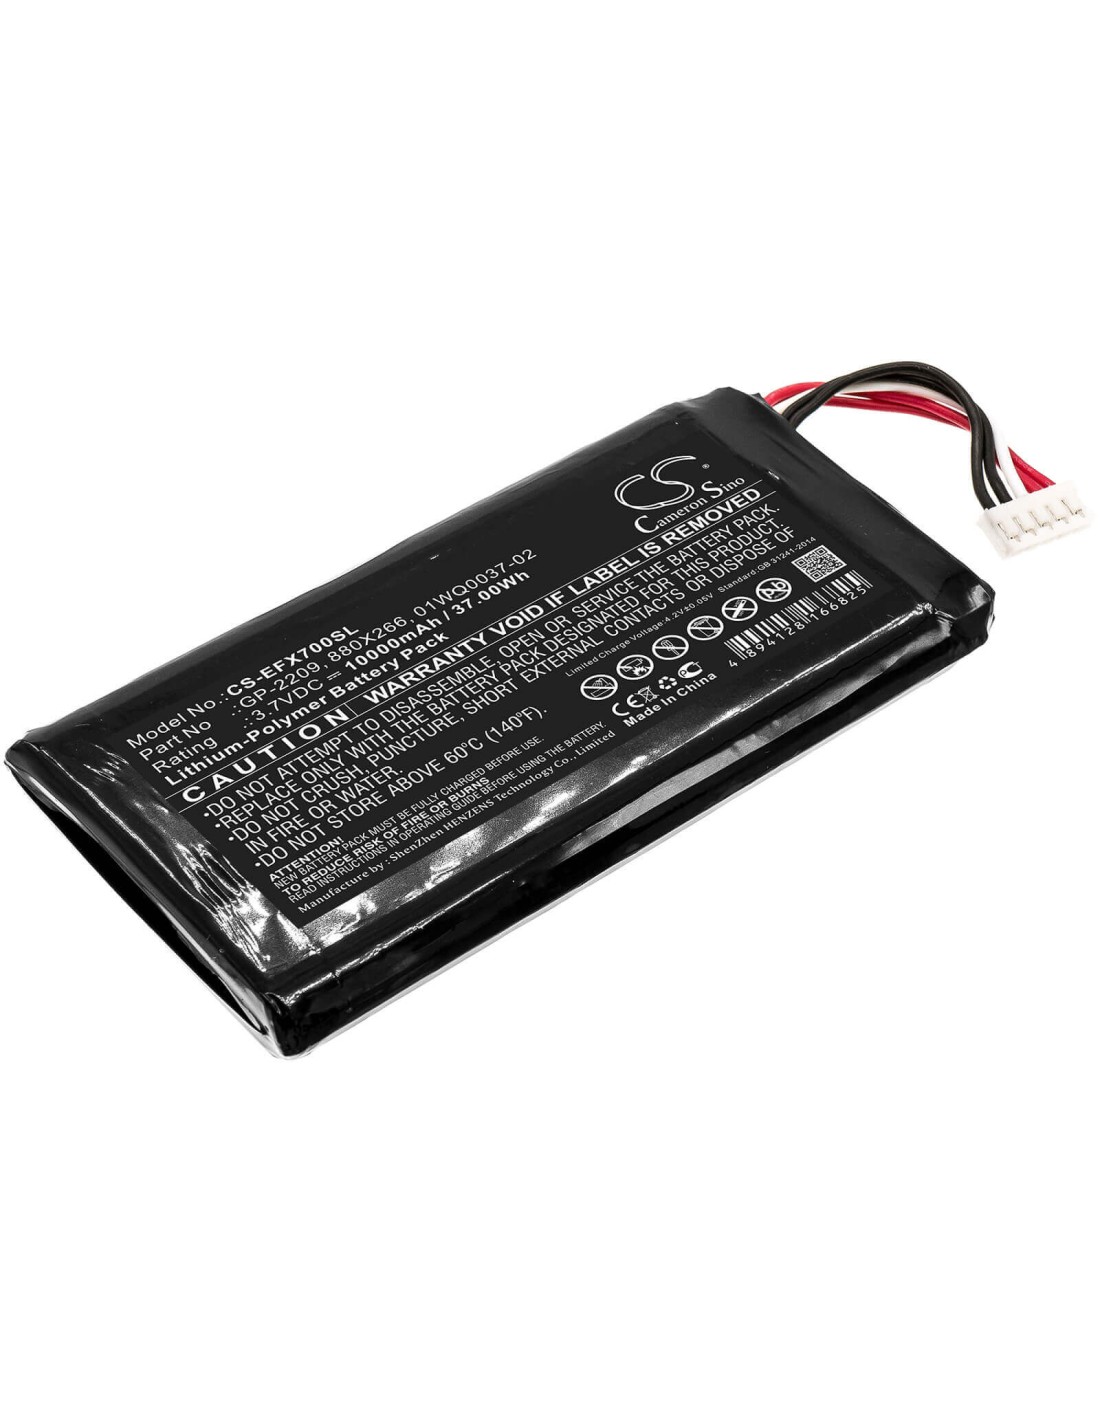 Battery for Exfo, Max-700, Max-700b/c, Max-900 3.7V, 10000mAh - 37.00Wh